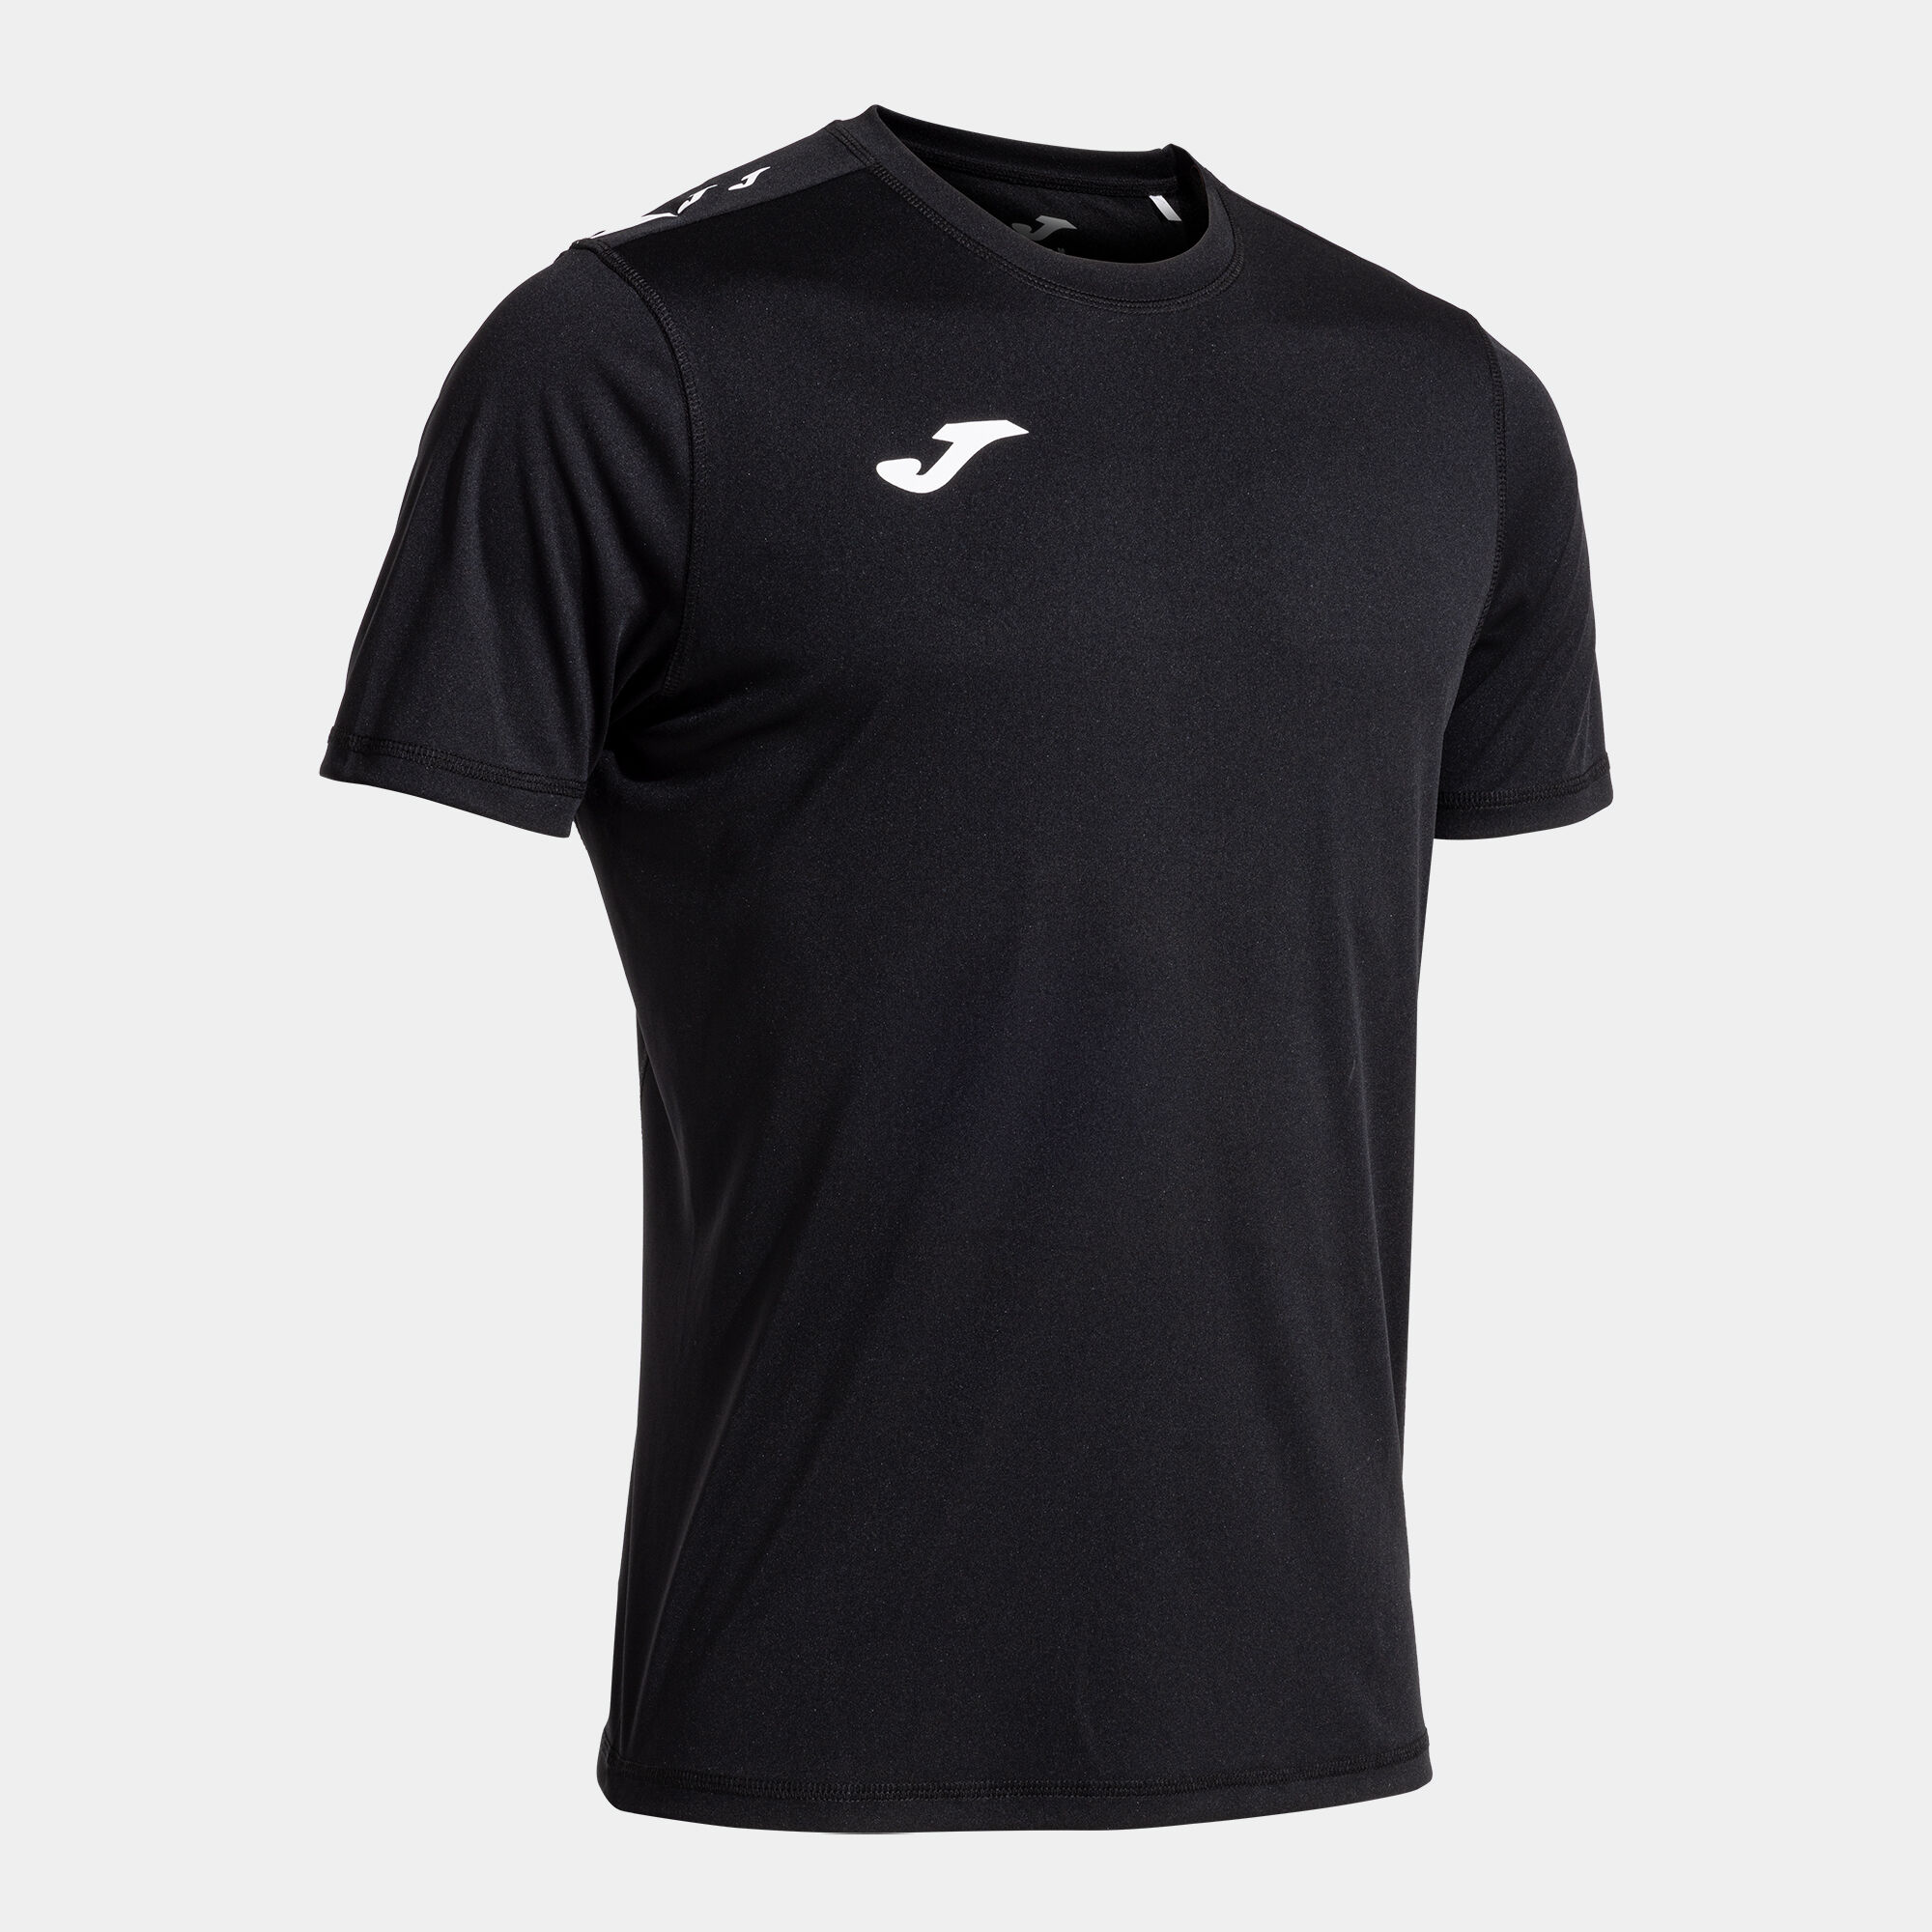 Camiseta manga corta hombre Olimpiada handball negro